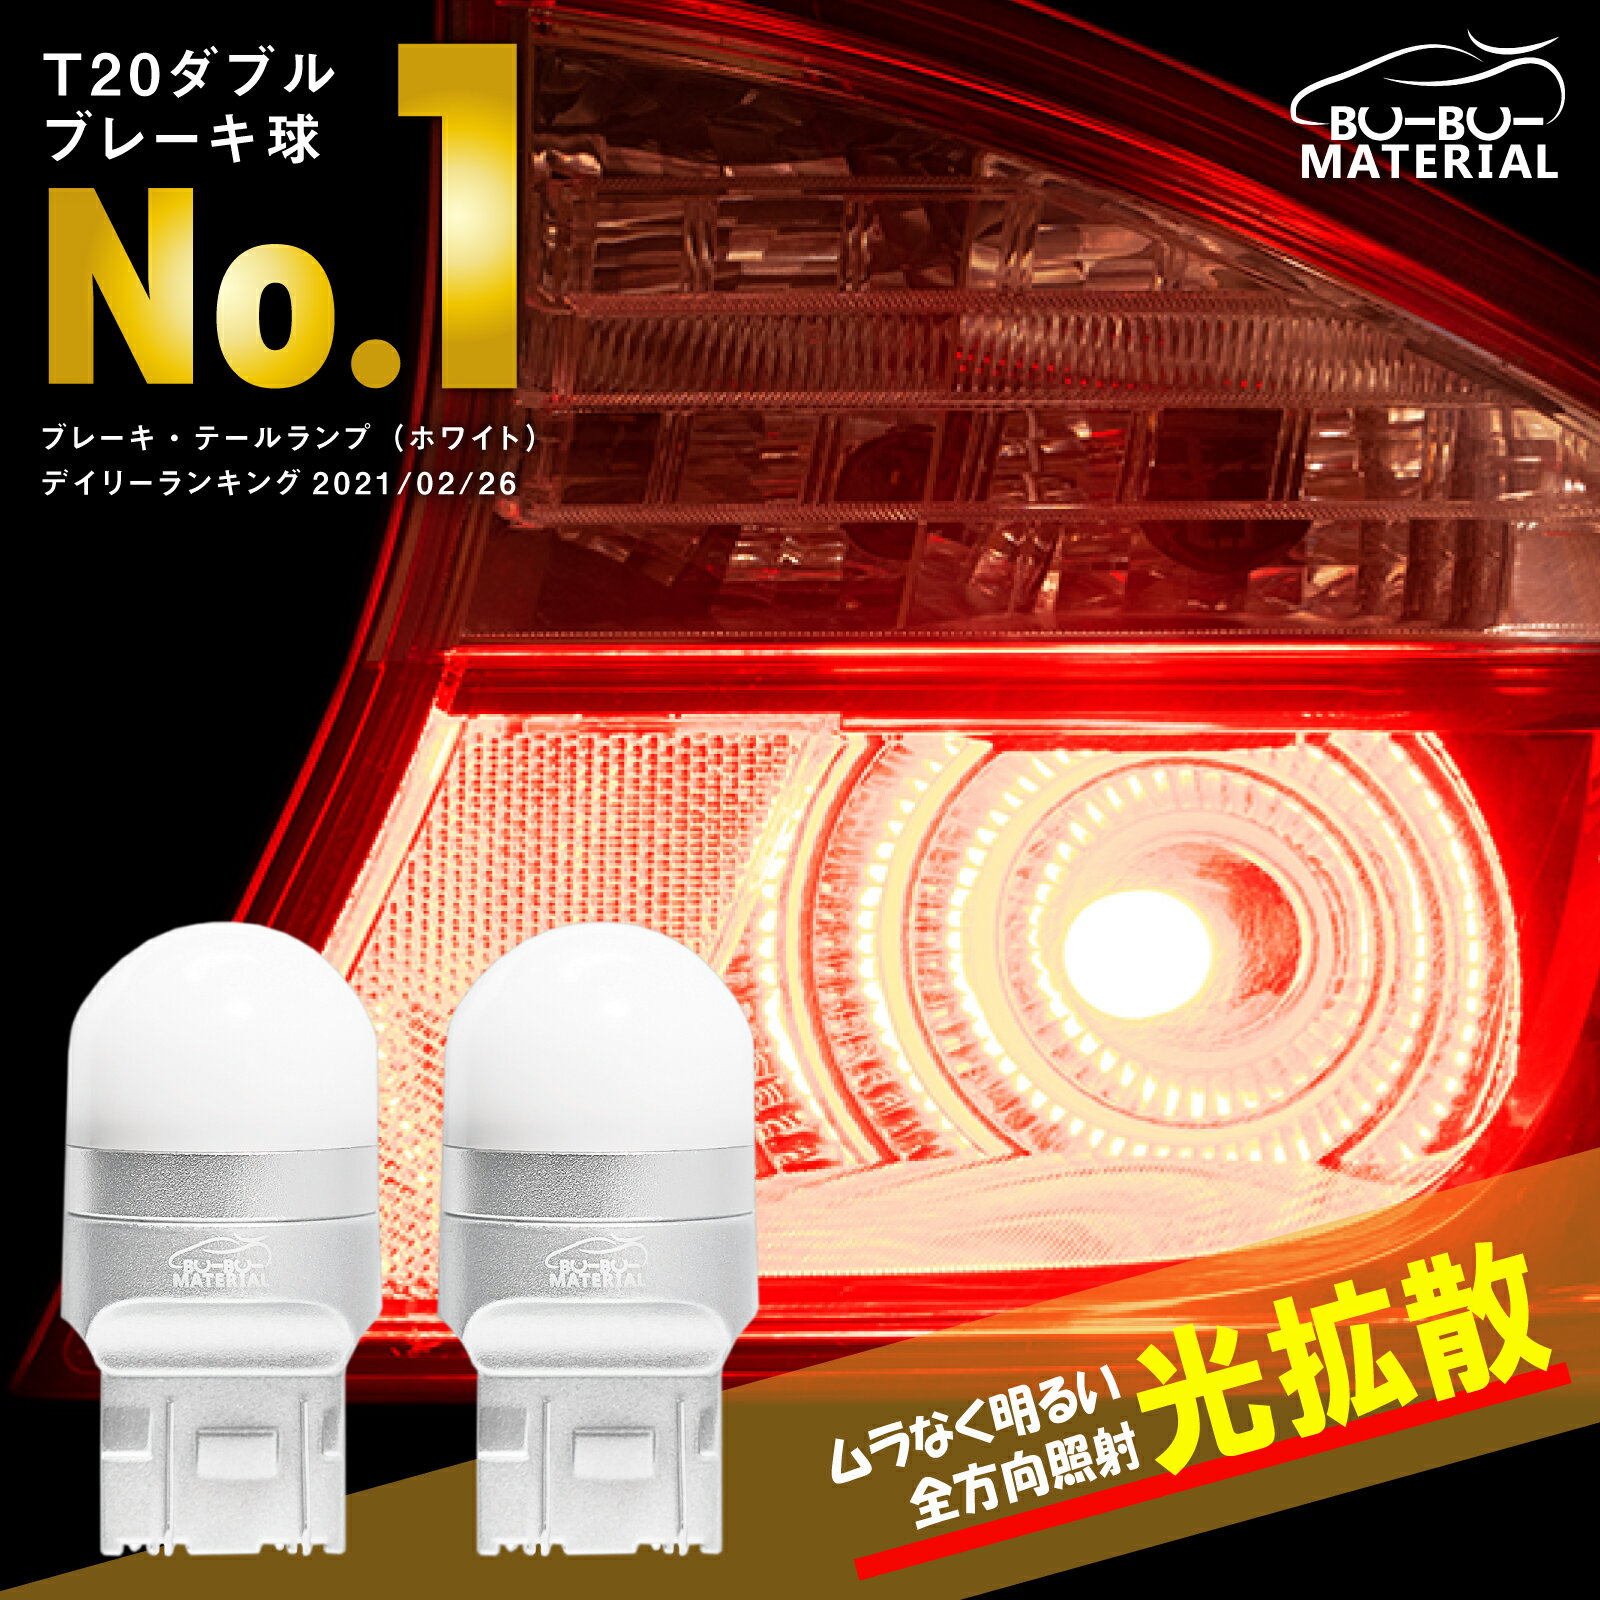 ぶーぶーマテリアル ムラなく光る T20 ダブル LED レッド 赤 ステルス 爆光 車検対応 ホワイト 白 LEDバルブ ライト ブレーキランプ テールランプ 2個